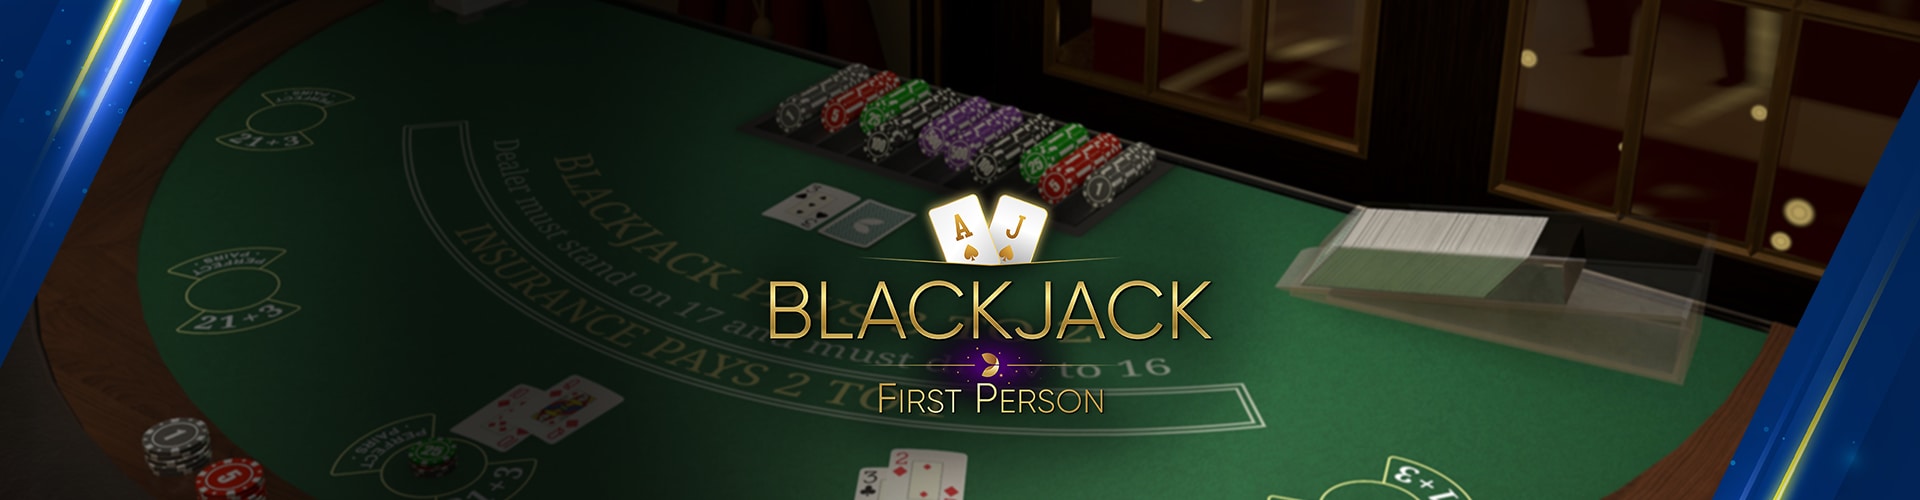 Blackjack en línea de lujo